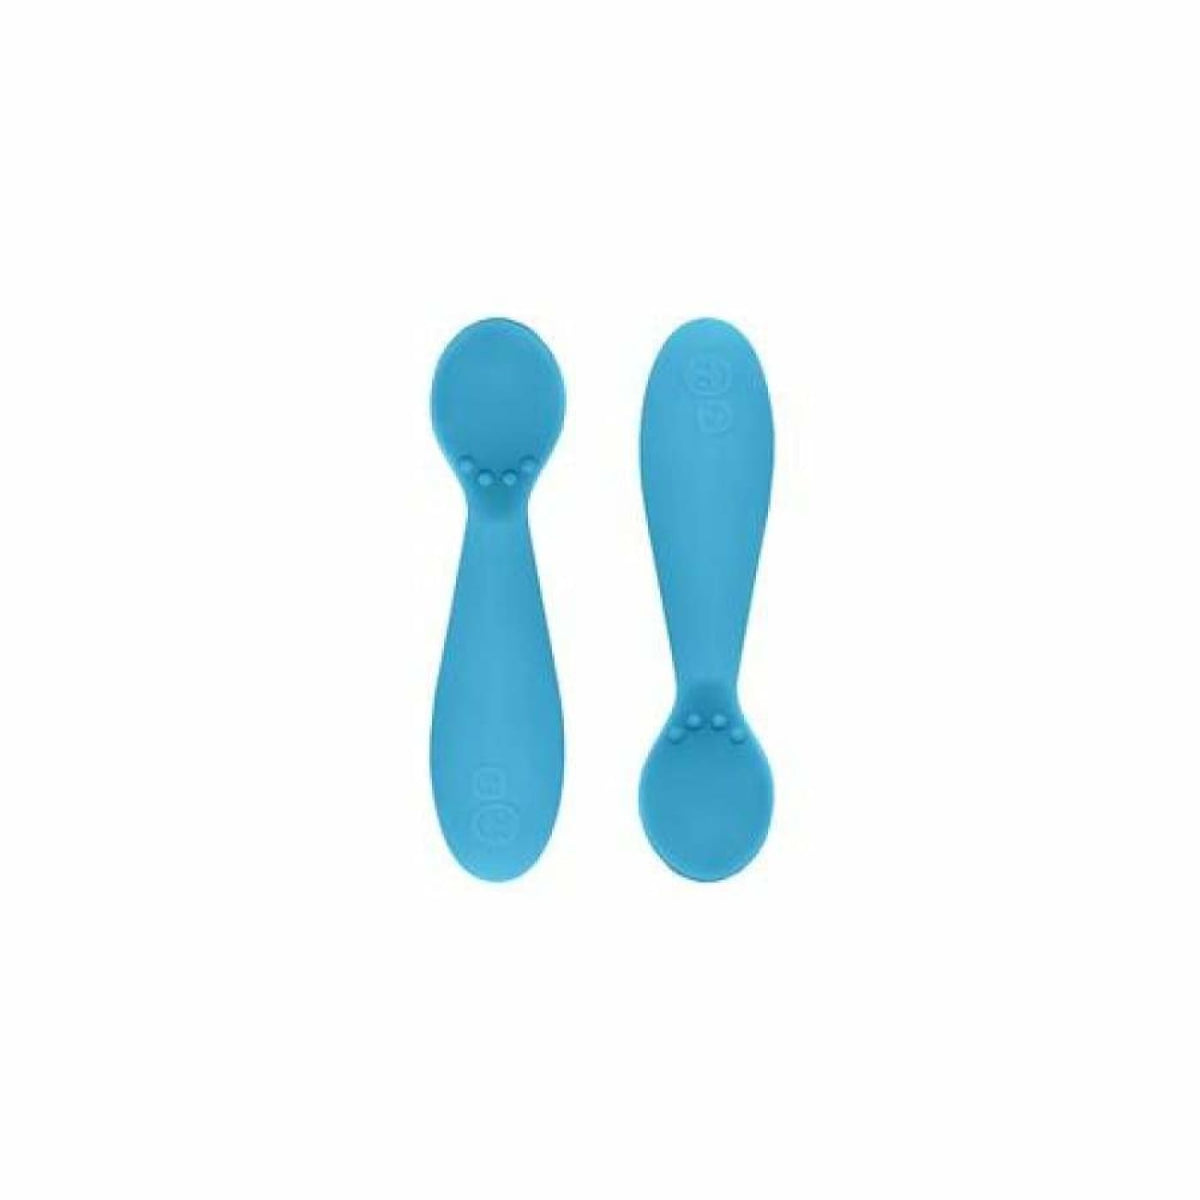 EZPZ Tiny Spoon 2pk - Blue - Blue - NURSING &amp; FEEDING - CUTLERY/PLATES/BOWLS/TOYS